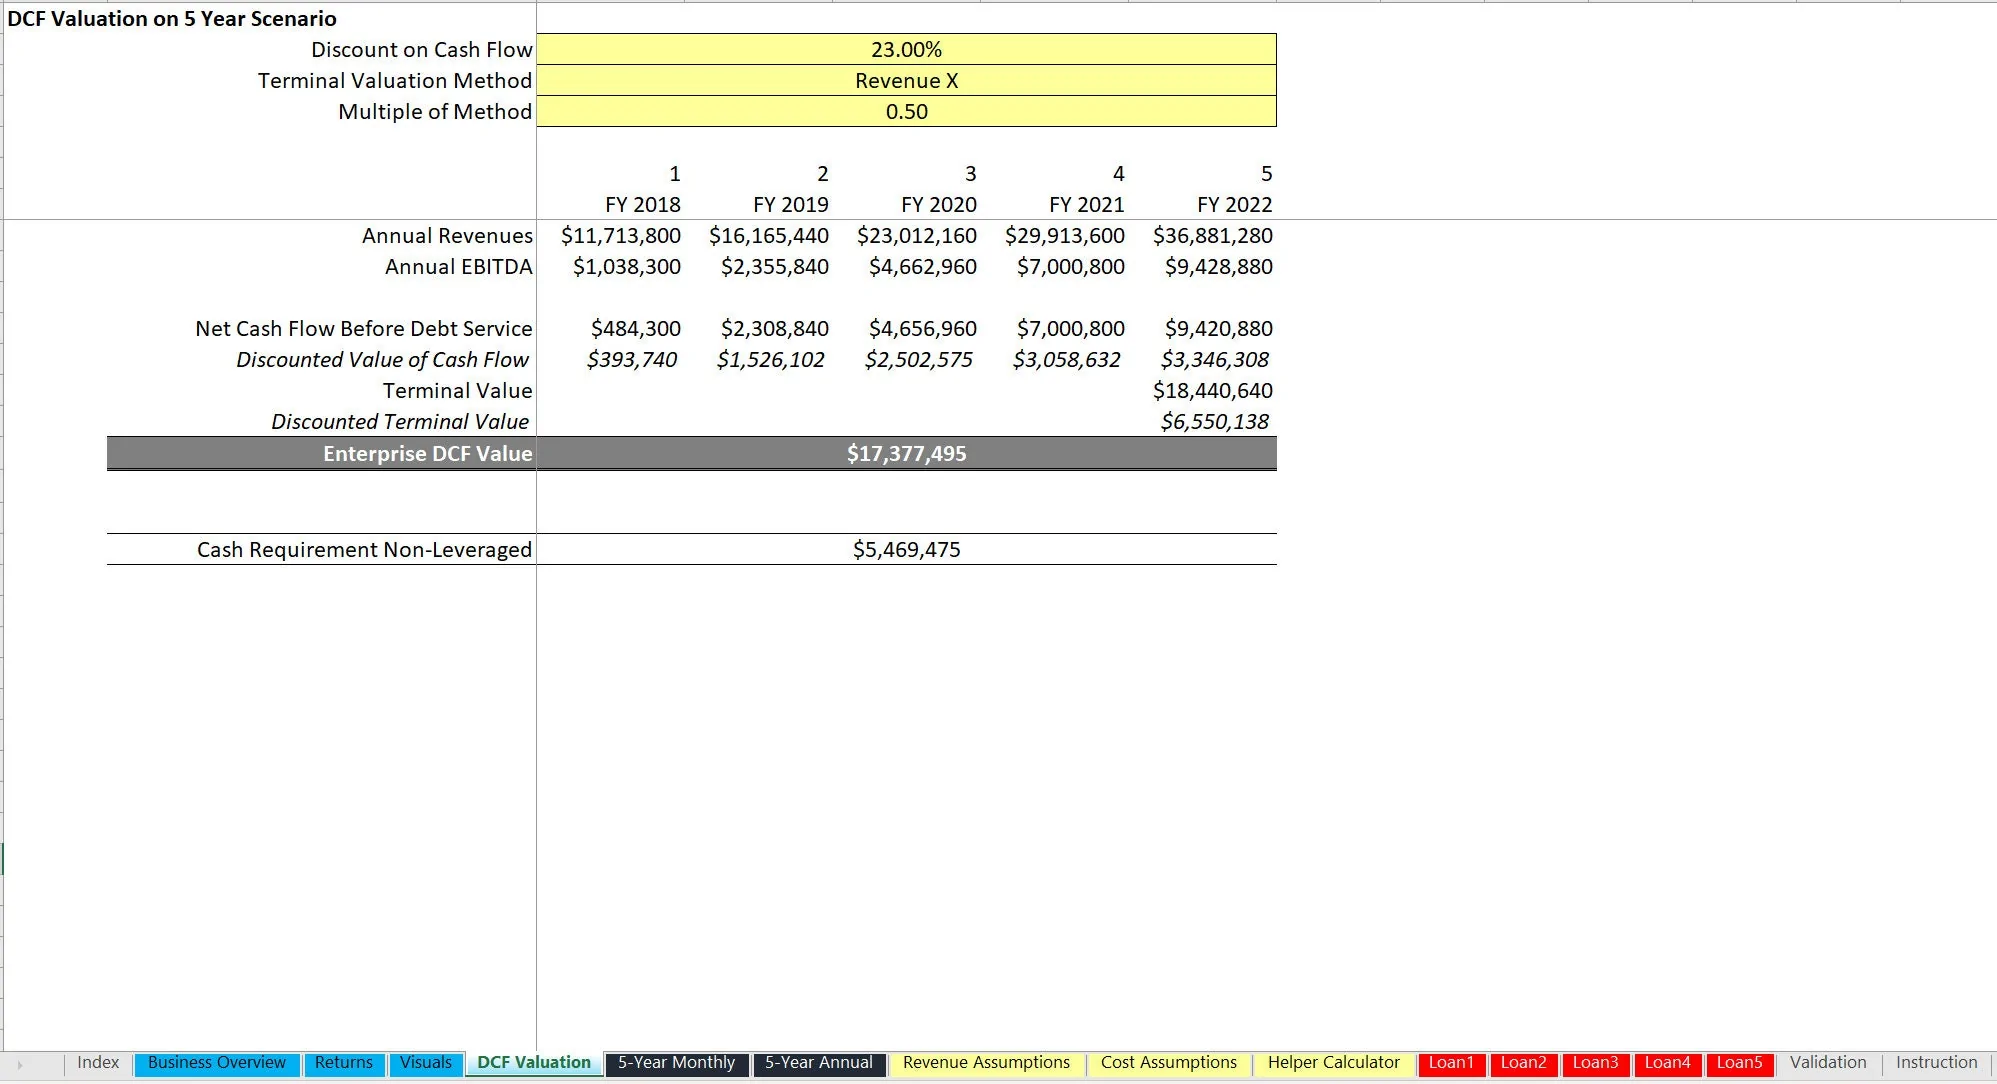 Auto Repair Shop Financial Model (Excel workbook (XLSX)) Preview Image